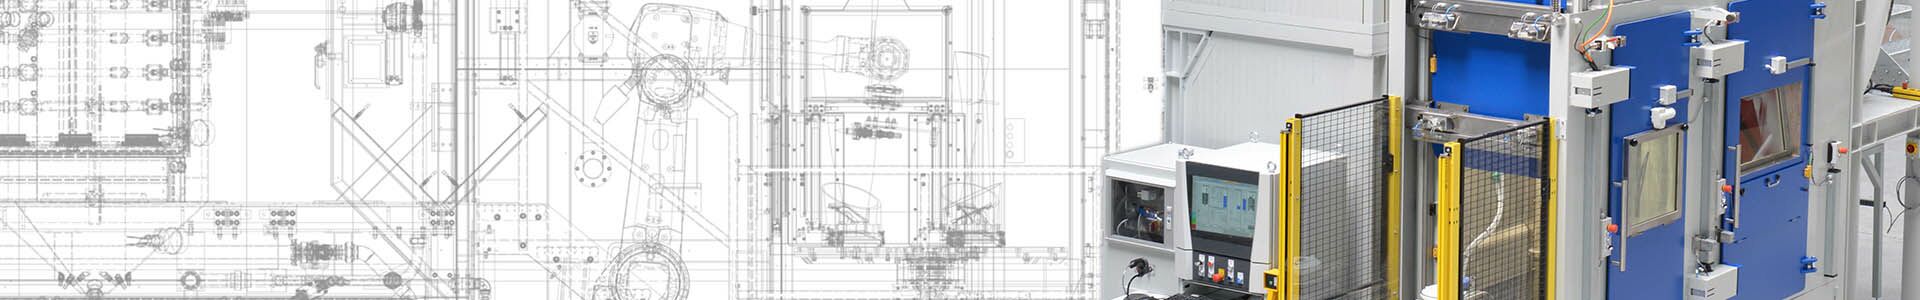 CAD-Zeichung und Bild einer Strahlanlage nebeneinander